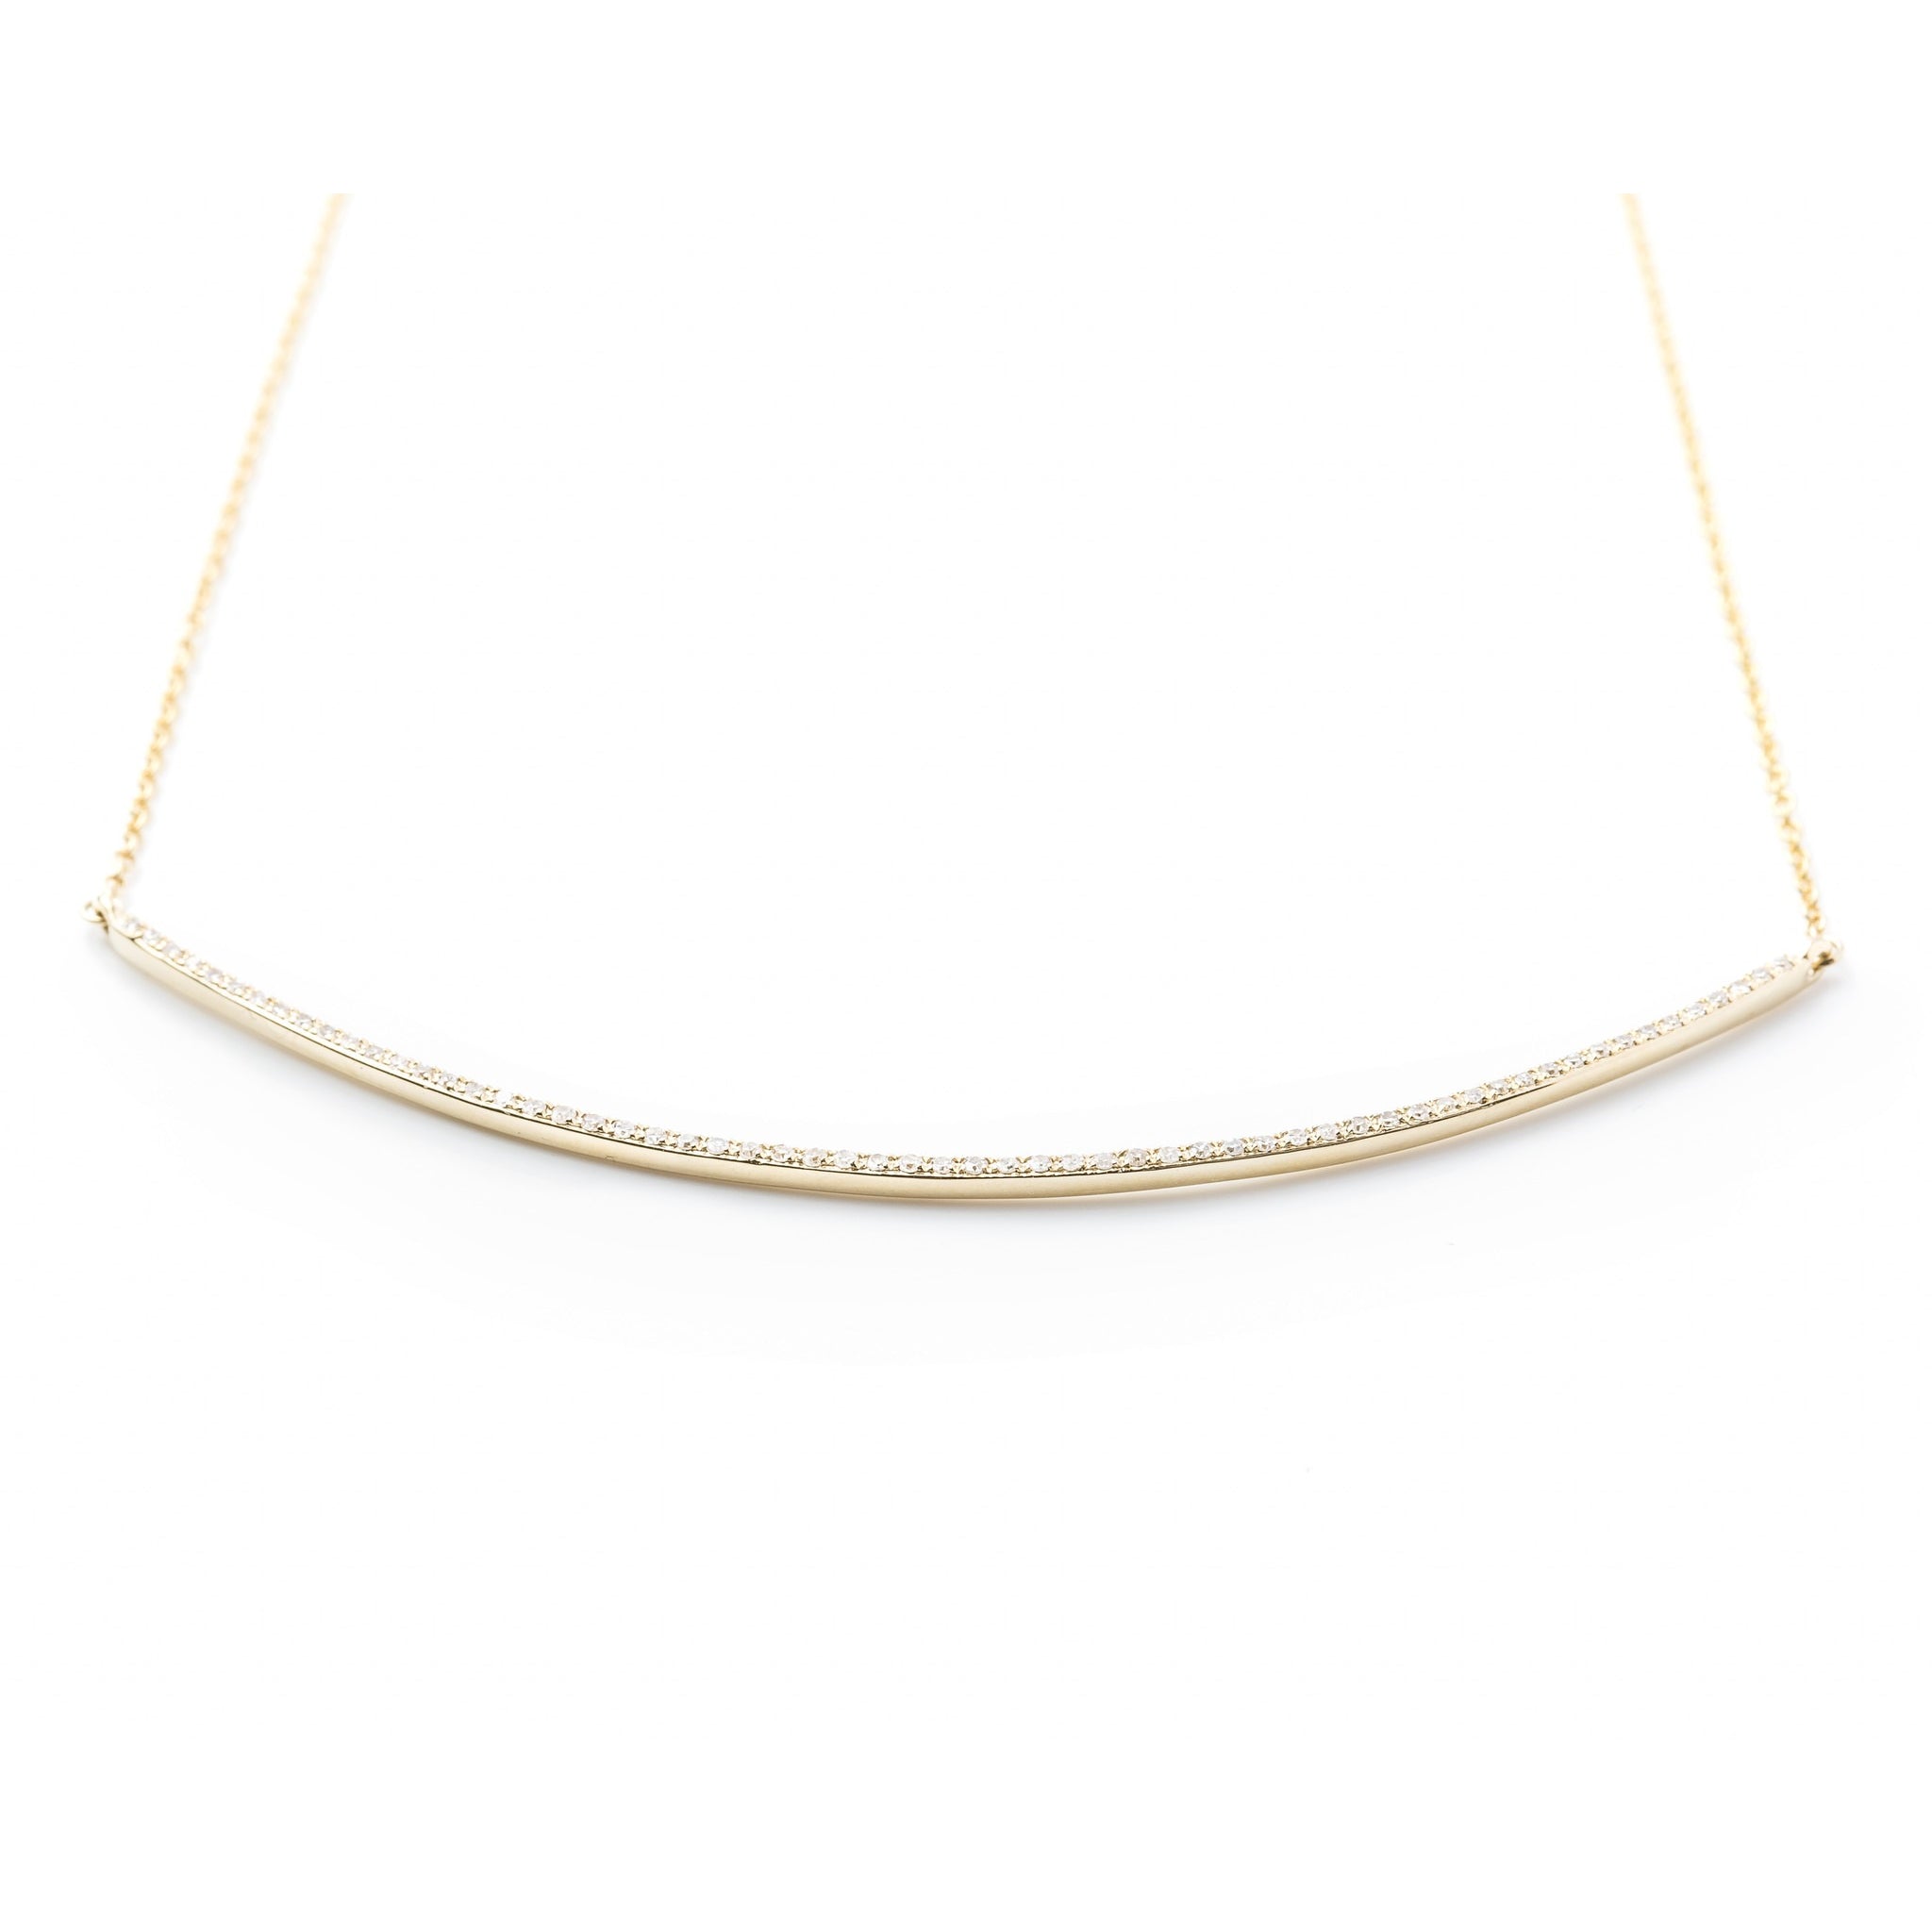 Diamond Arc Necklace by Atheria Jewelry